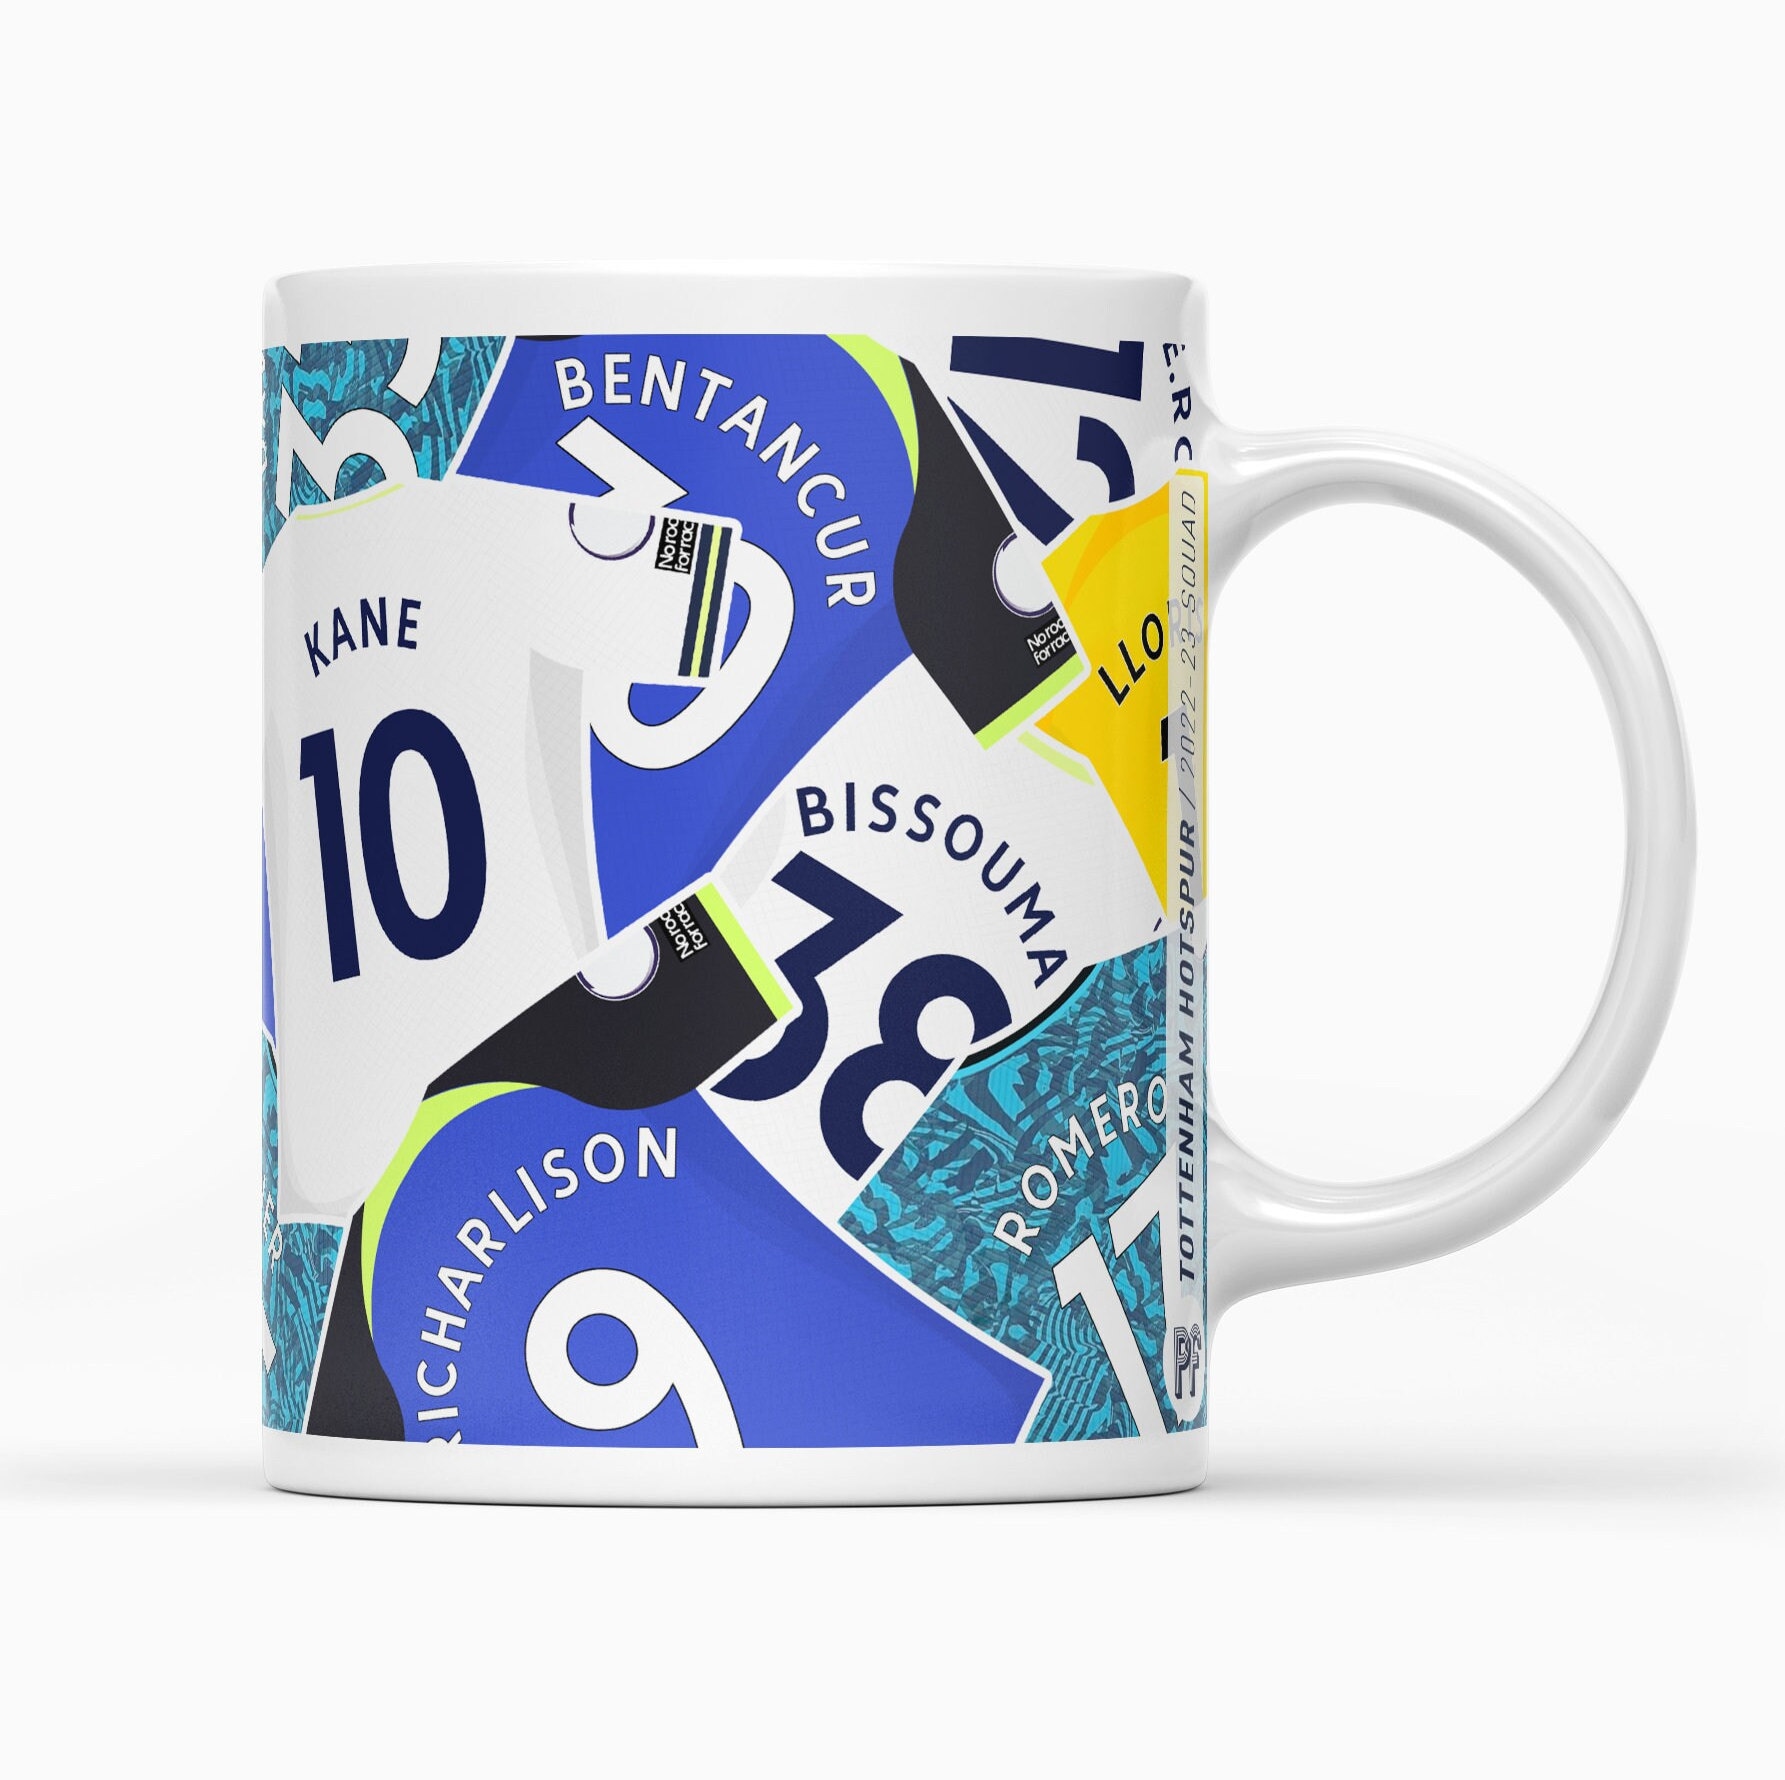 Spurs Retro Kit 2016 Mug